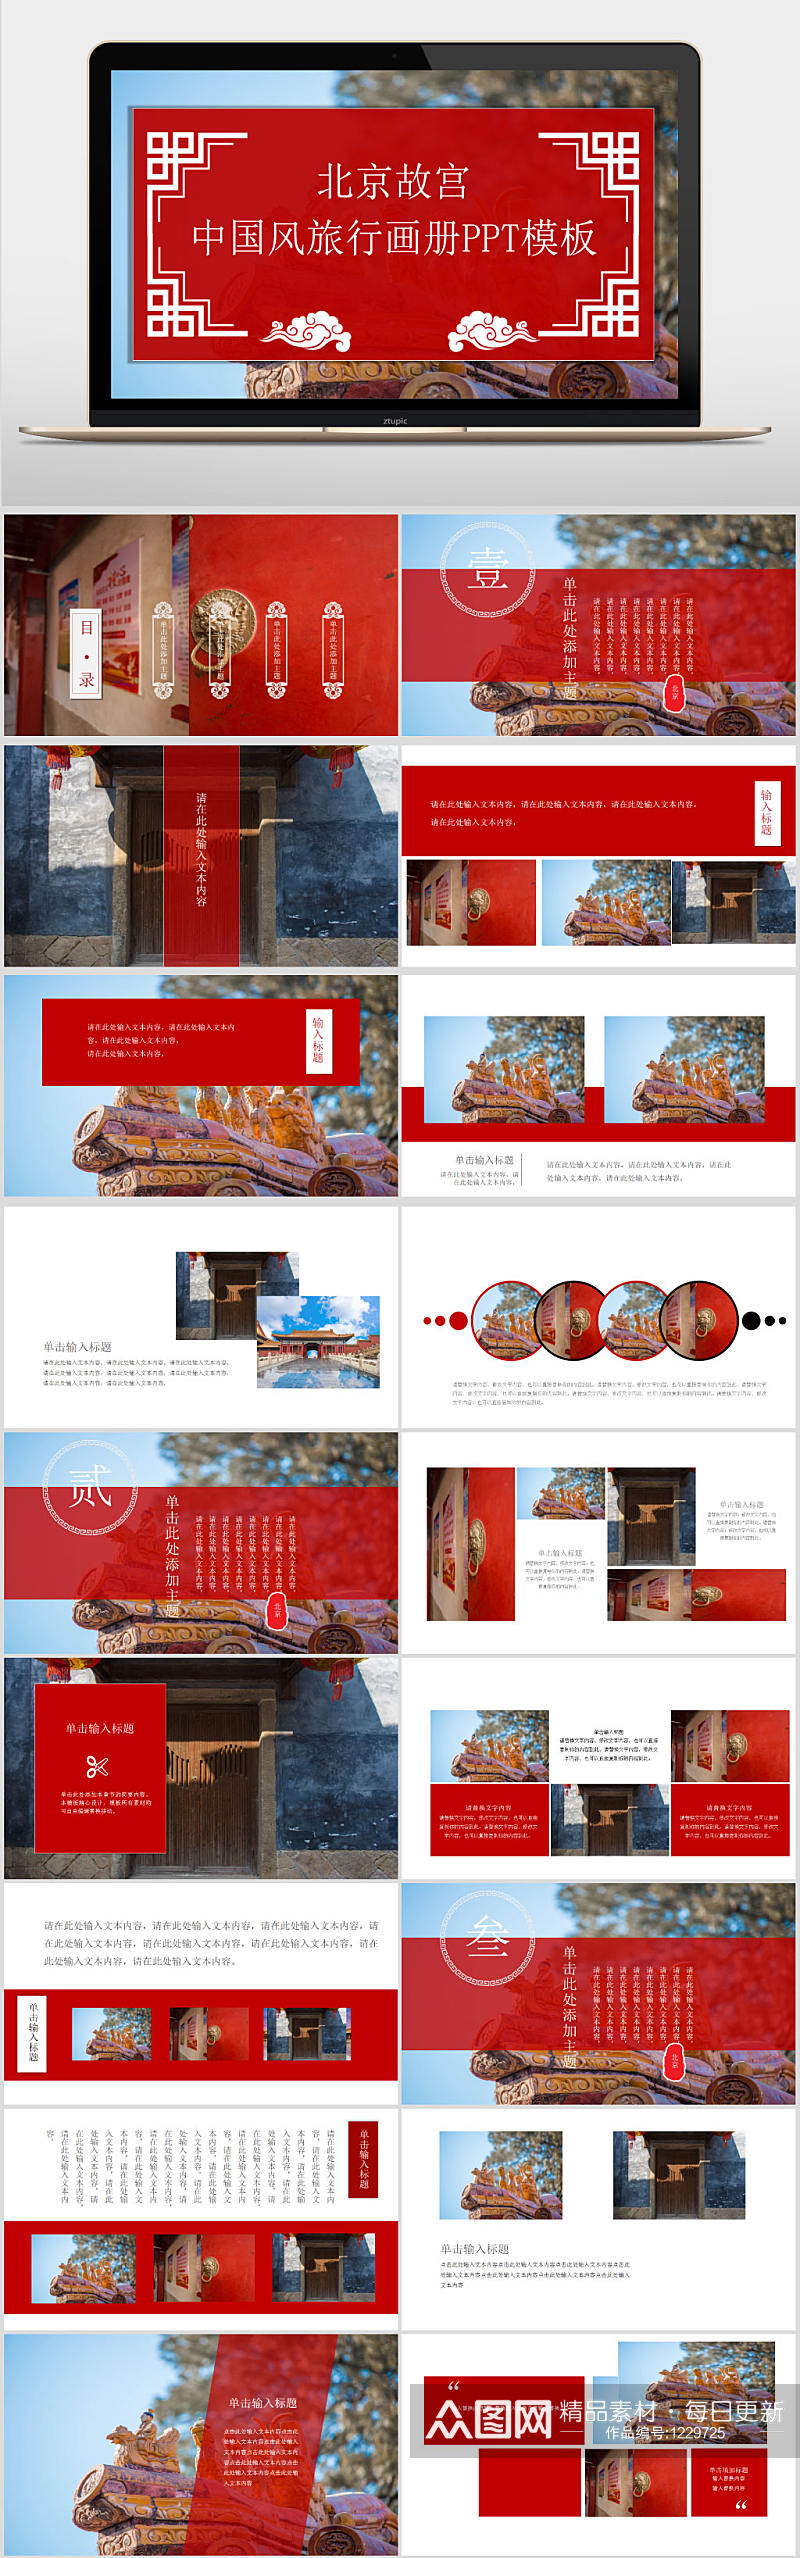 复古中国风北京故宫旅游画册记忆PPT模板素材